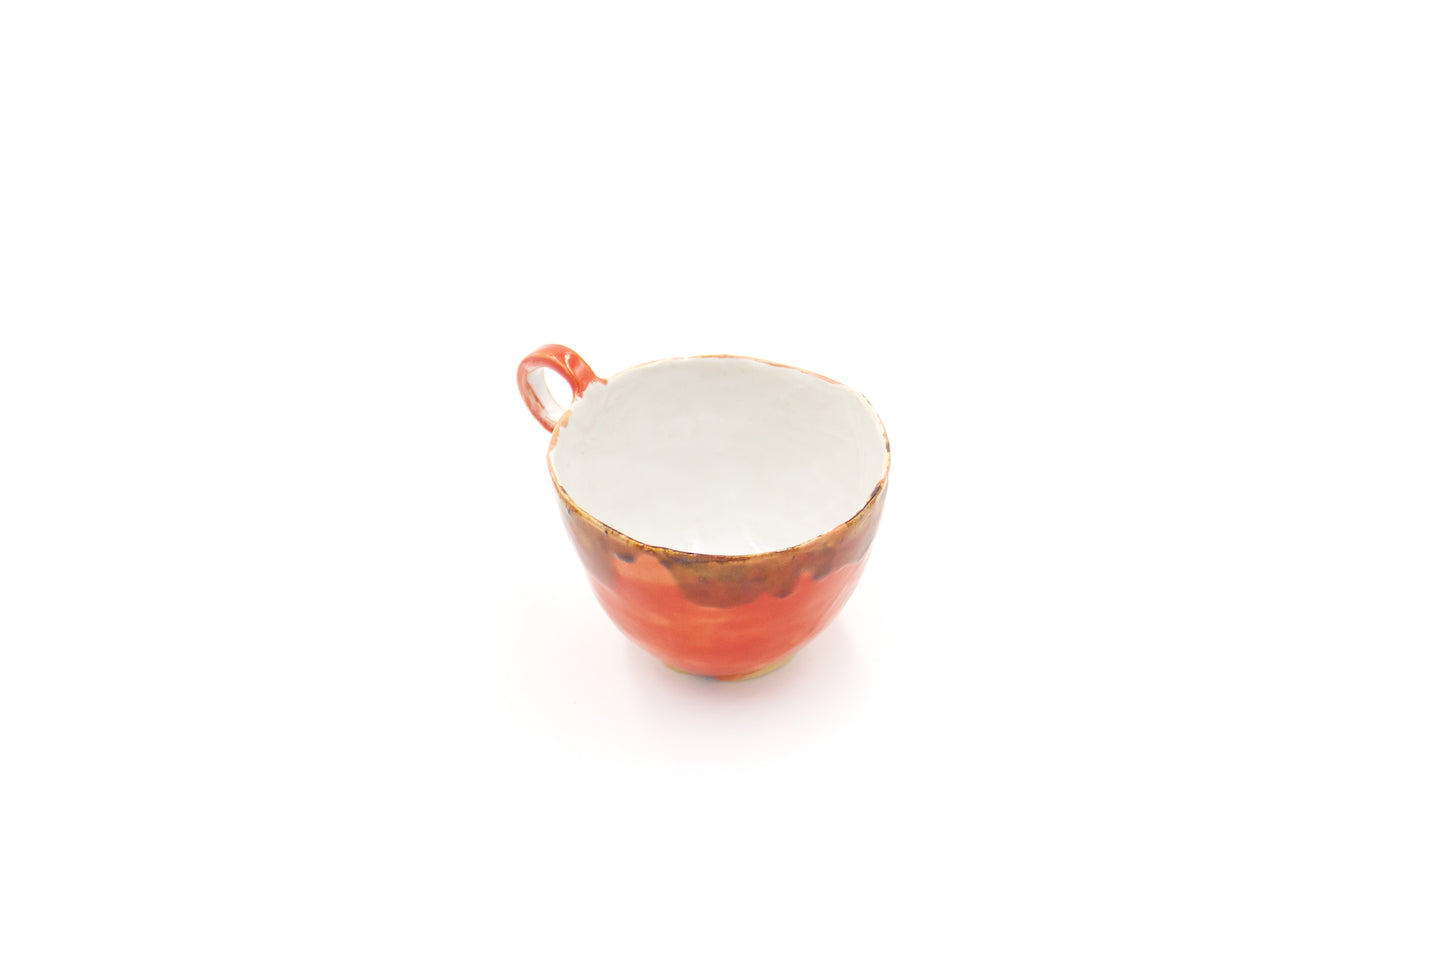 Kubek ceramiczny w kolorze biało-czerwonym